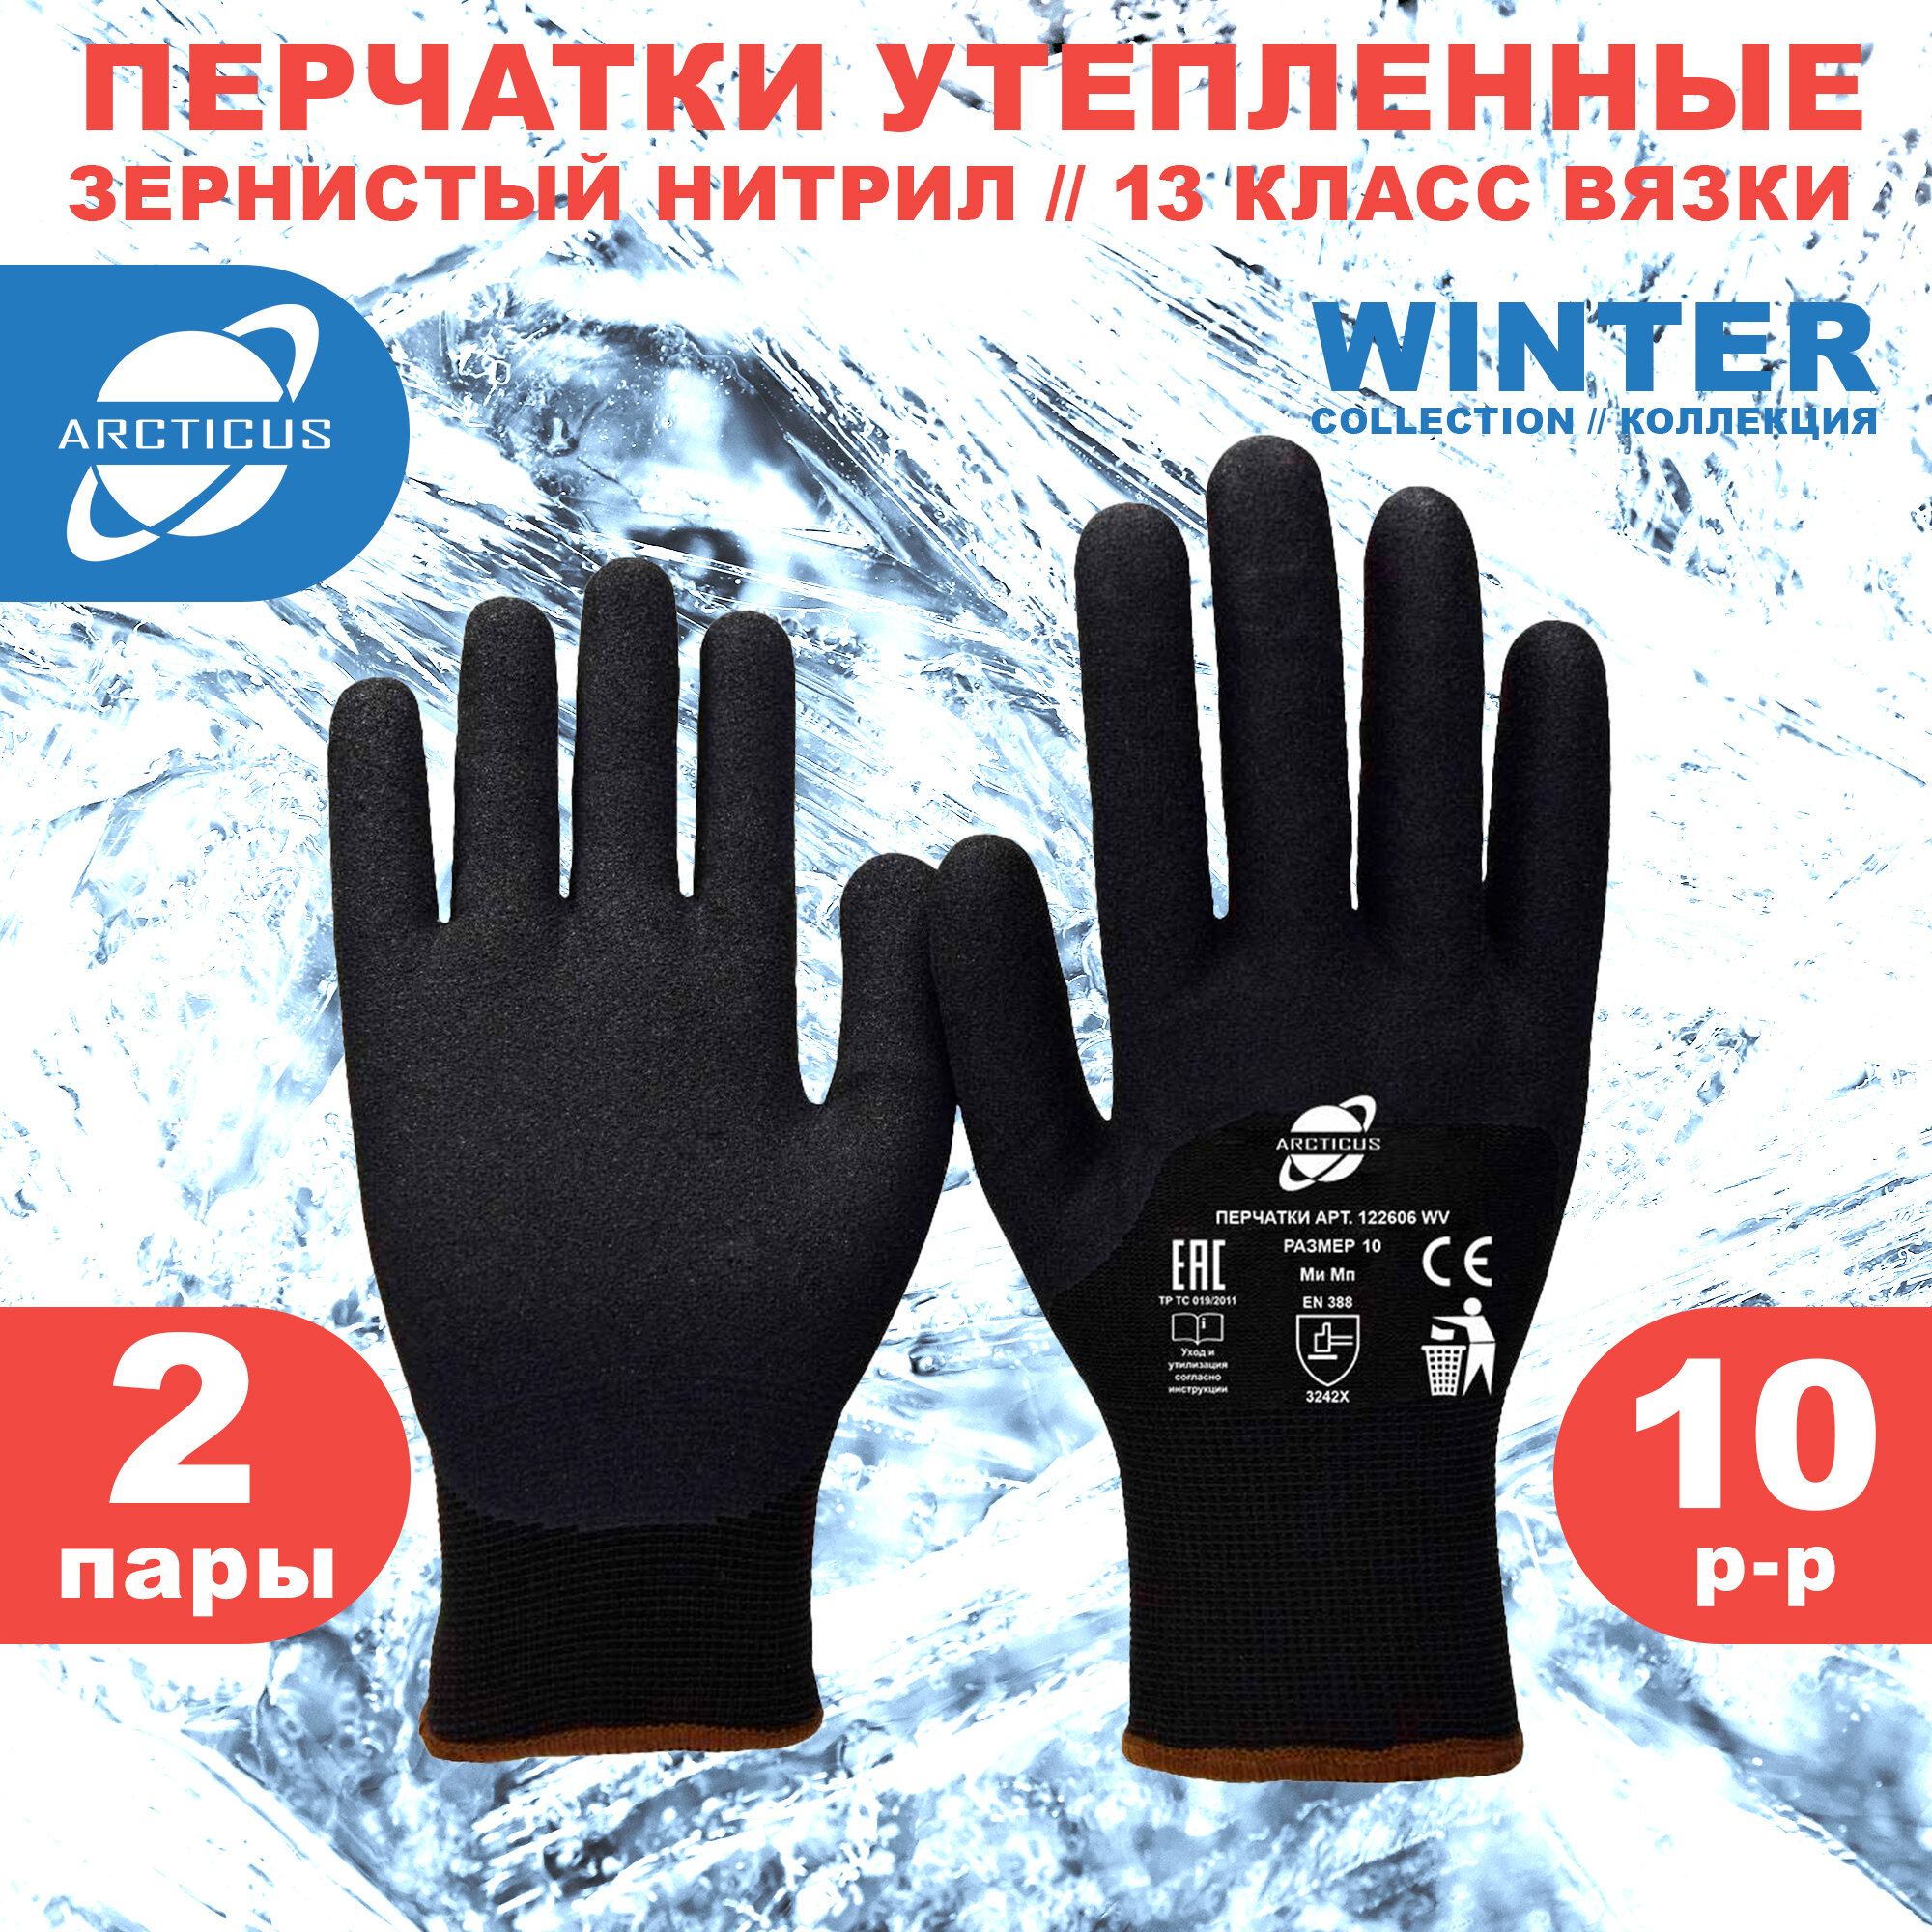 Защитные зимние перчатки с нитриловым покрытием, ARCTICUS 122606 WV, размер 10, 2 пары